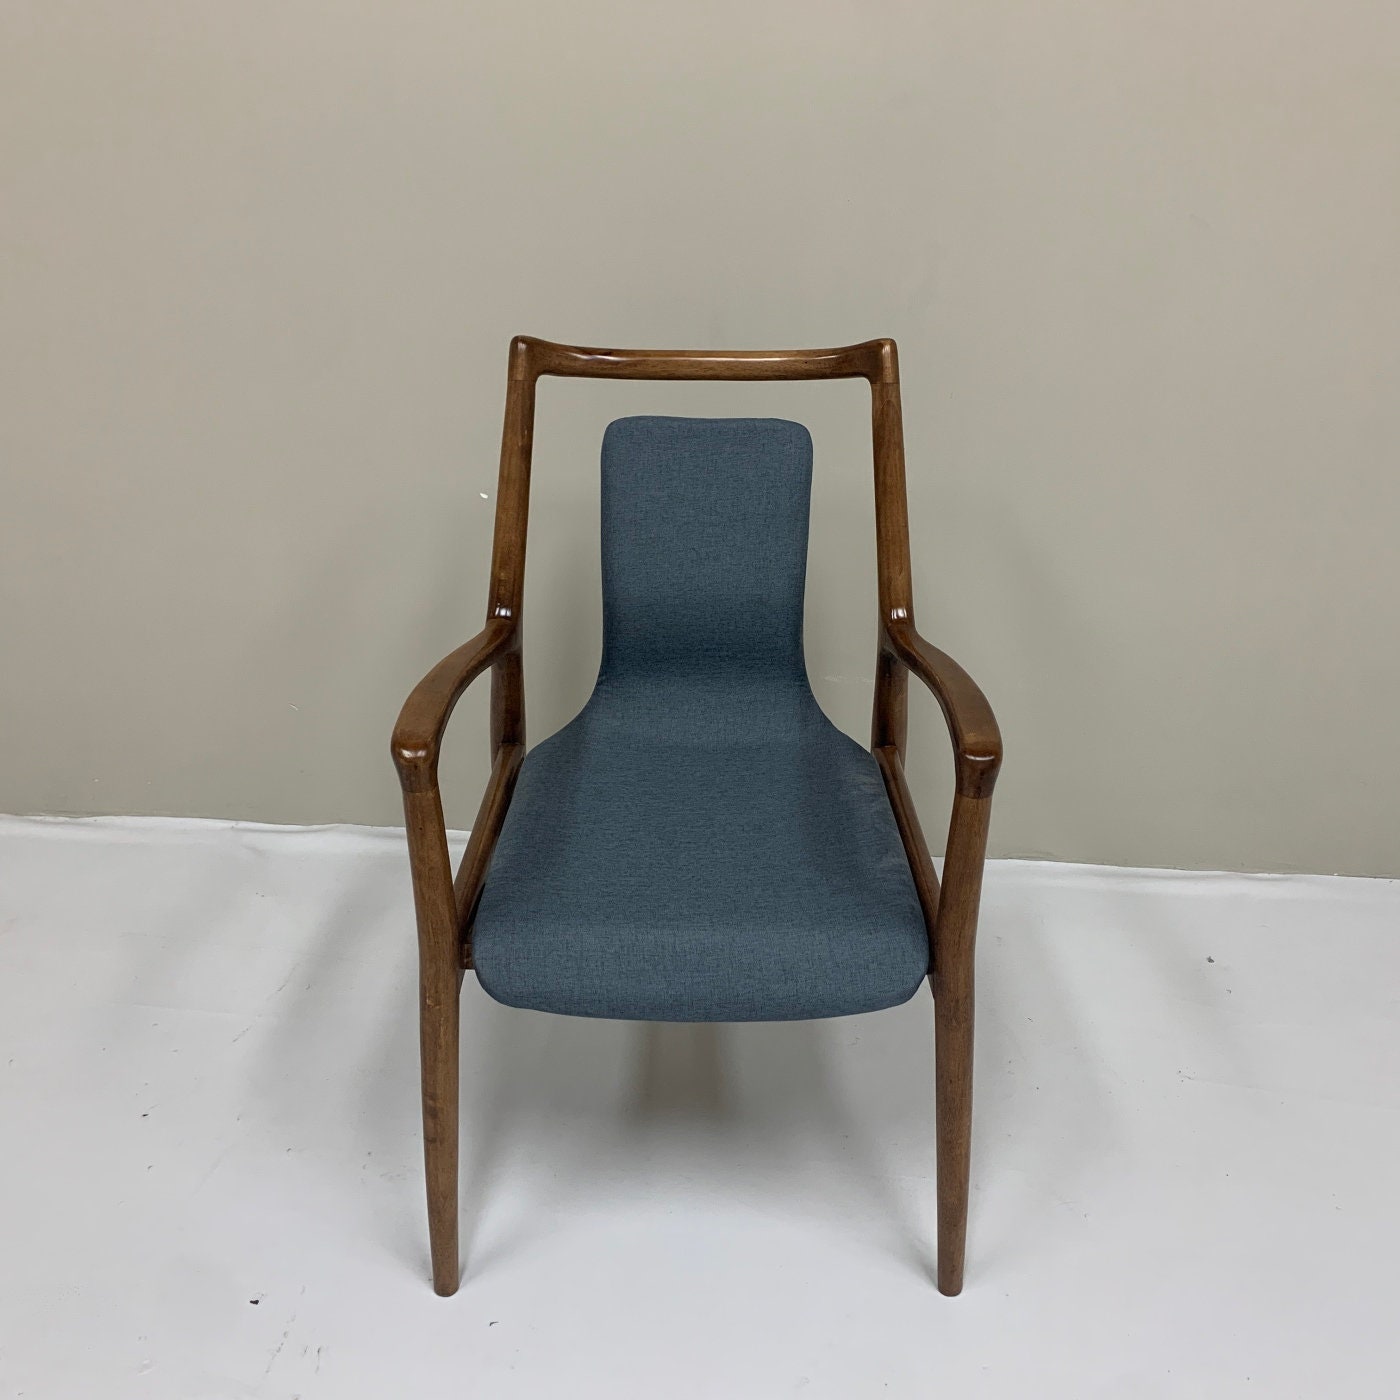 Sedia verniciata marrone, sedia in frassino, sedia moderna della metà del secolo, sedia da pranzo in frassino bianco